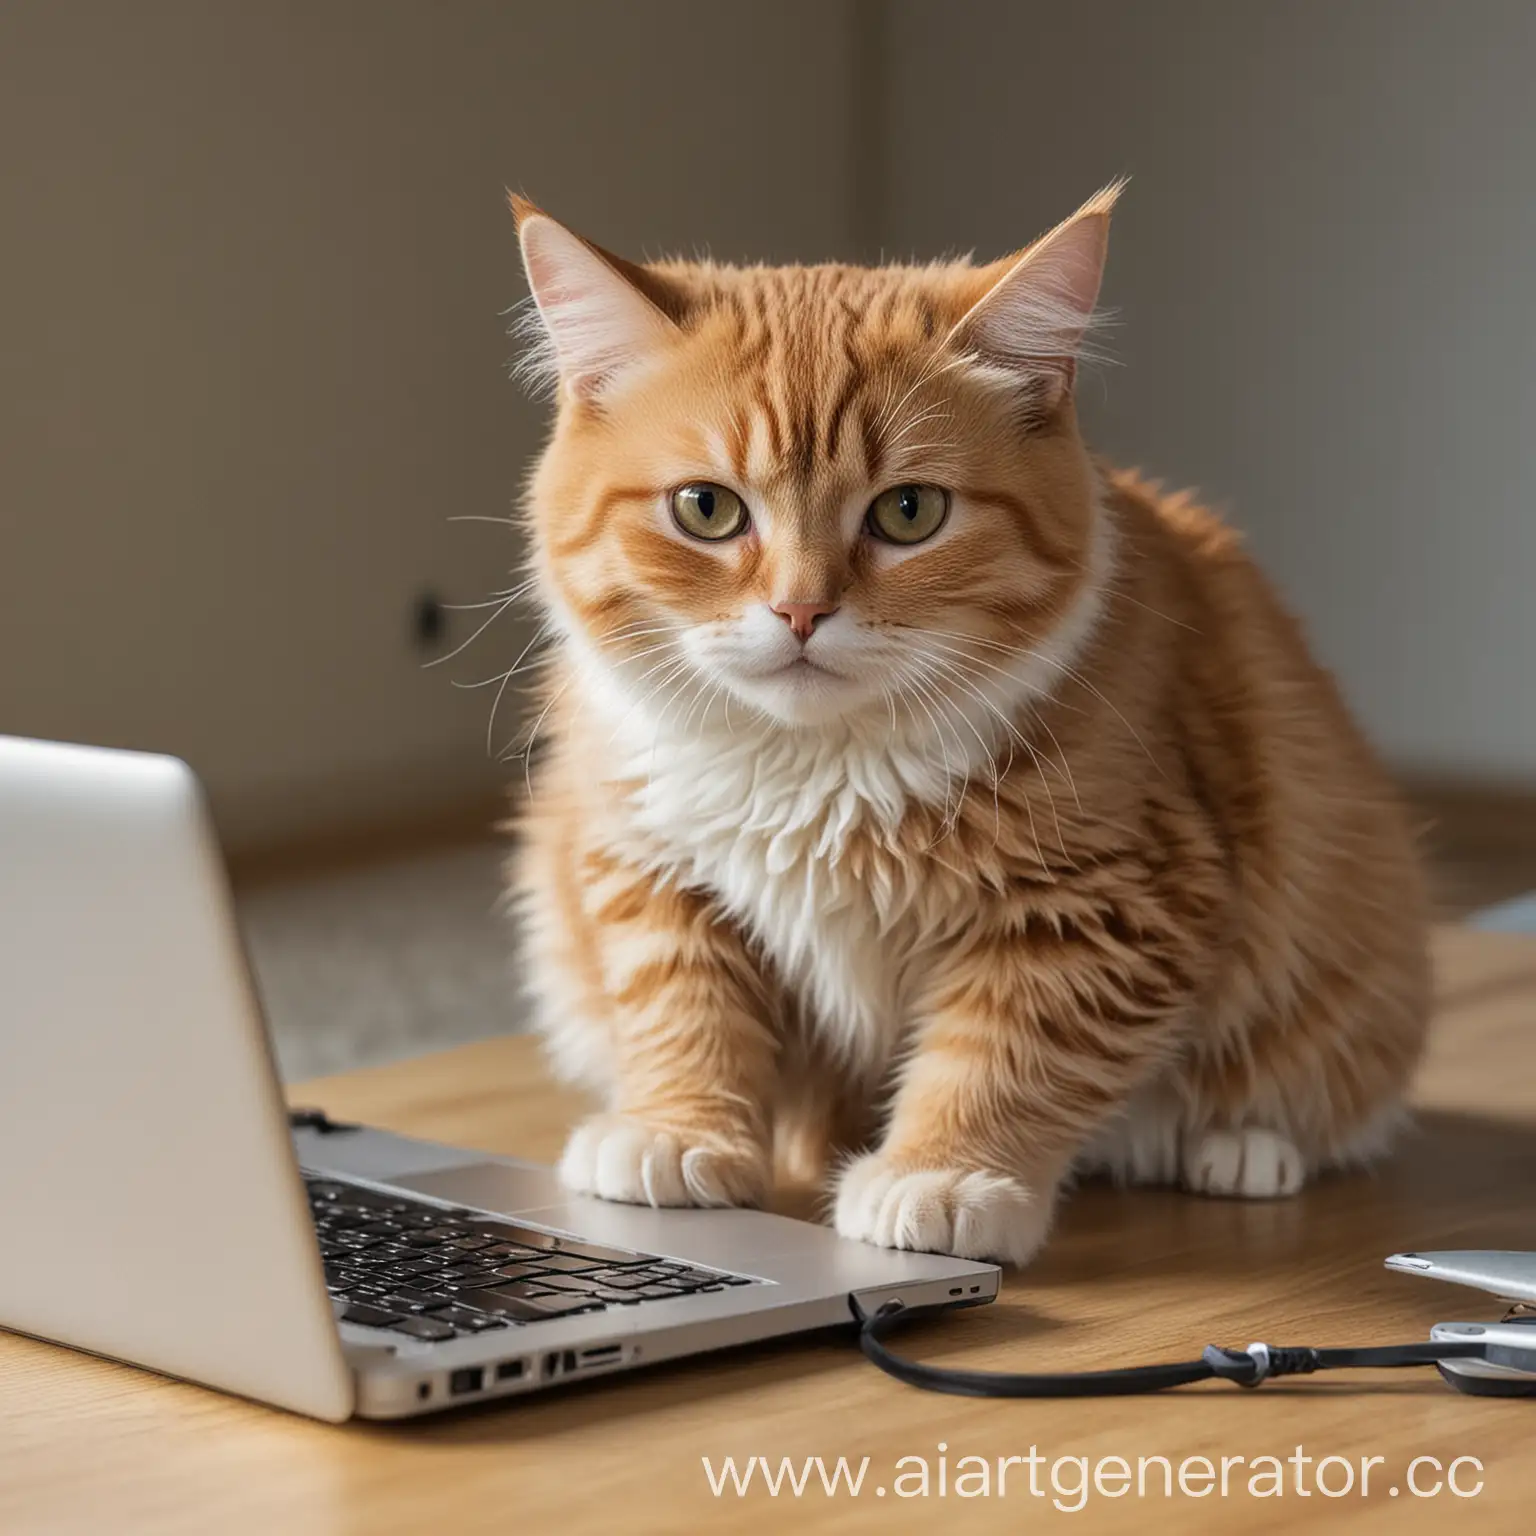 Айтишник кот за ноутбуком кодит